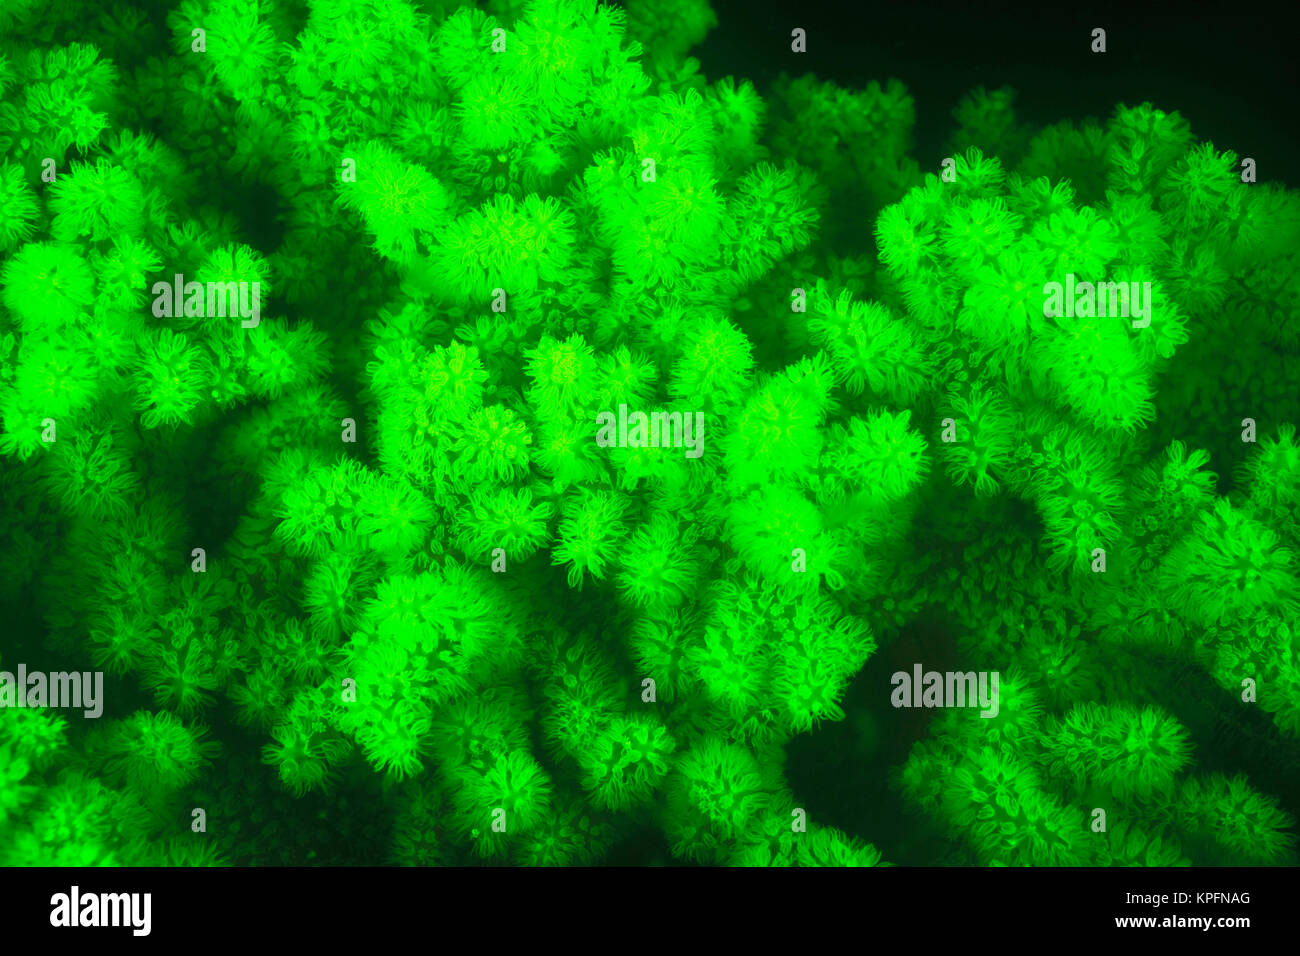 Produit naturel en fluorescence corail dur sous l'eau (Acropora sp.), capturés par l'utilisation de filtres écrans anti-UV spécial, plongée de nuit près de Lewolin, Village de l'île, l'Api Illi Détroit Selat Boleng, Indonésie Banque D'Images